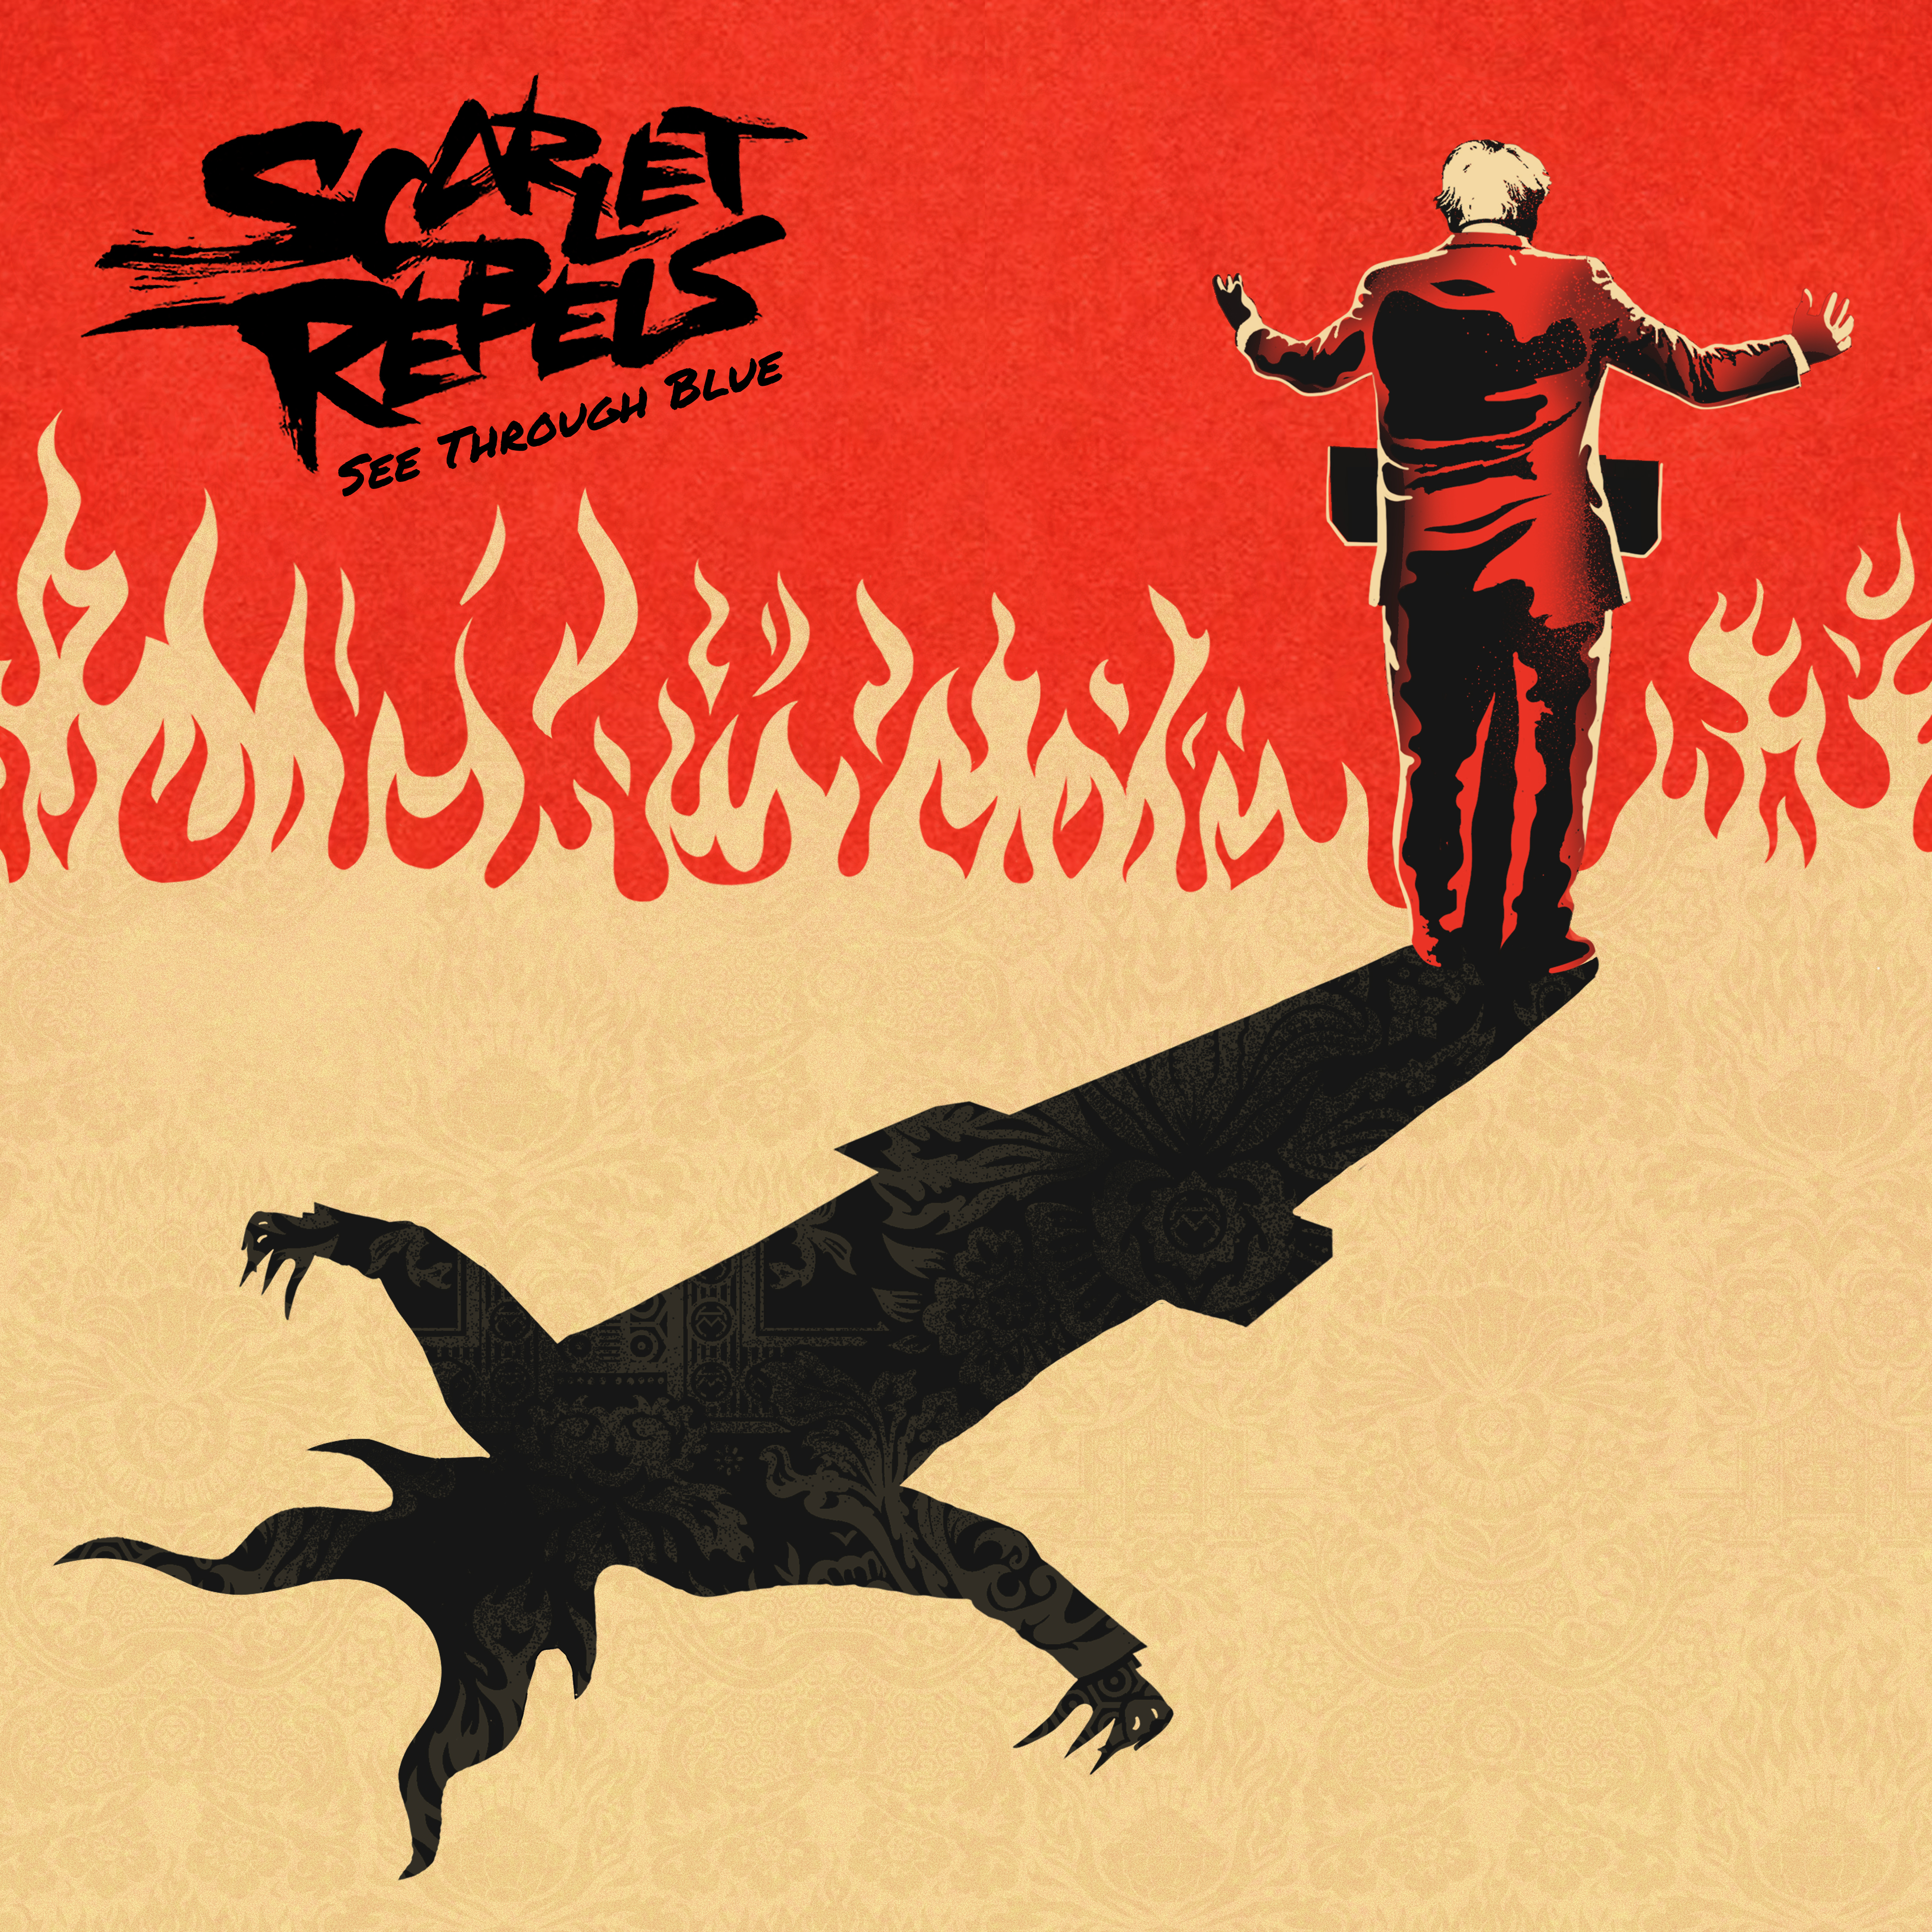 Scarlet Rebels See Through Blue (CD) Album Digipak (UK IMPORT) - Afbeelding 1 van 1